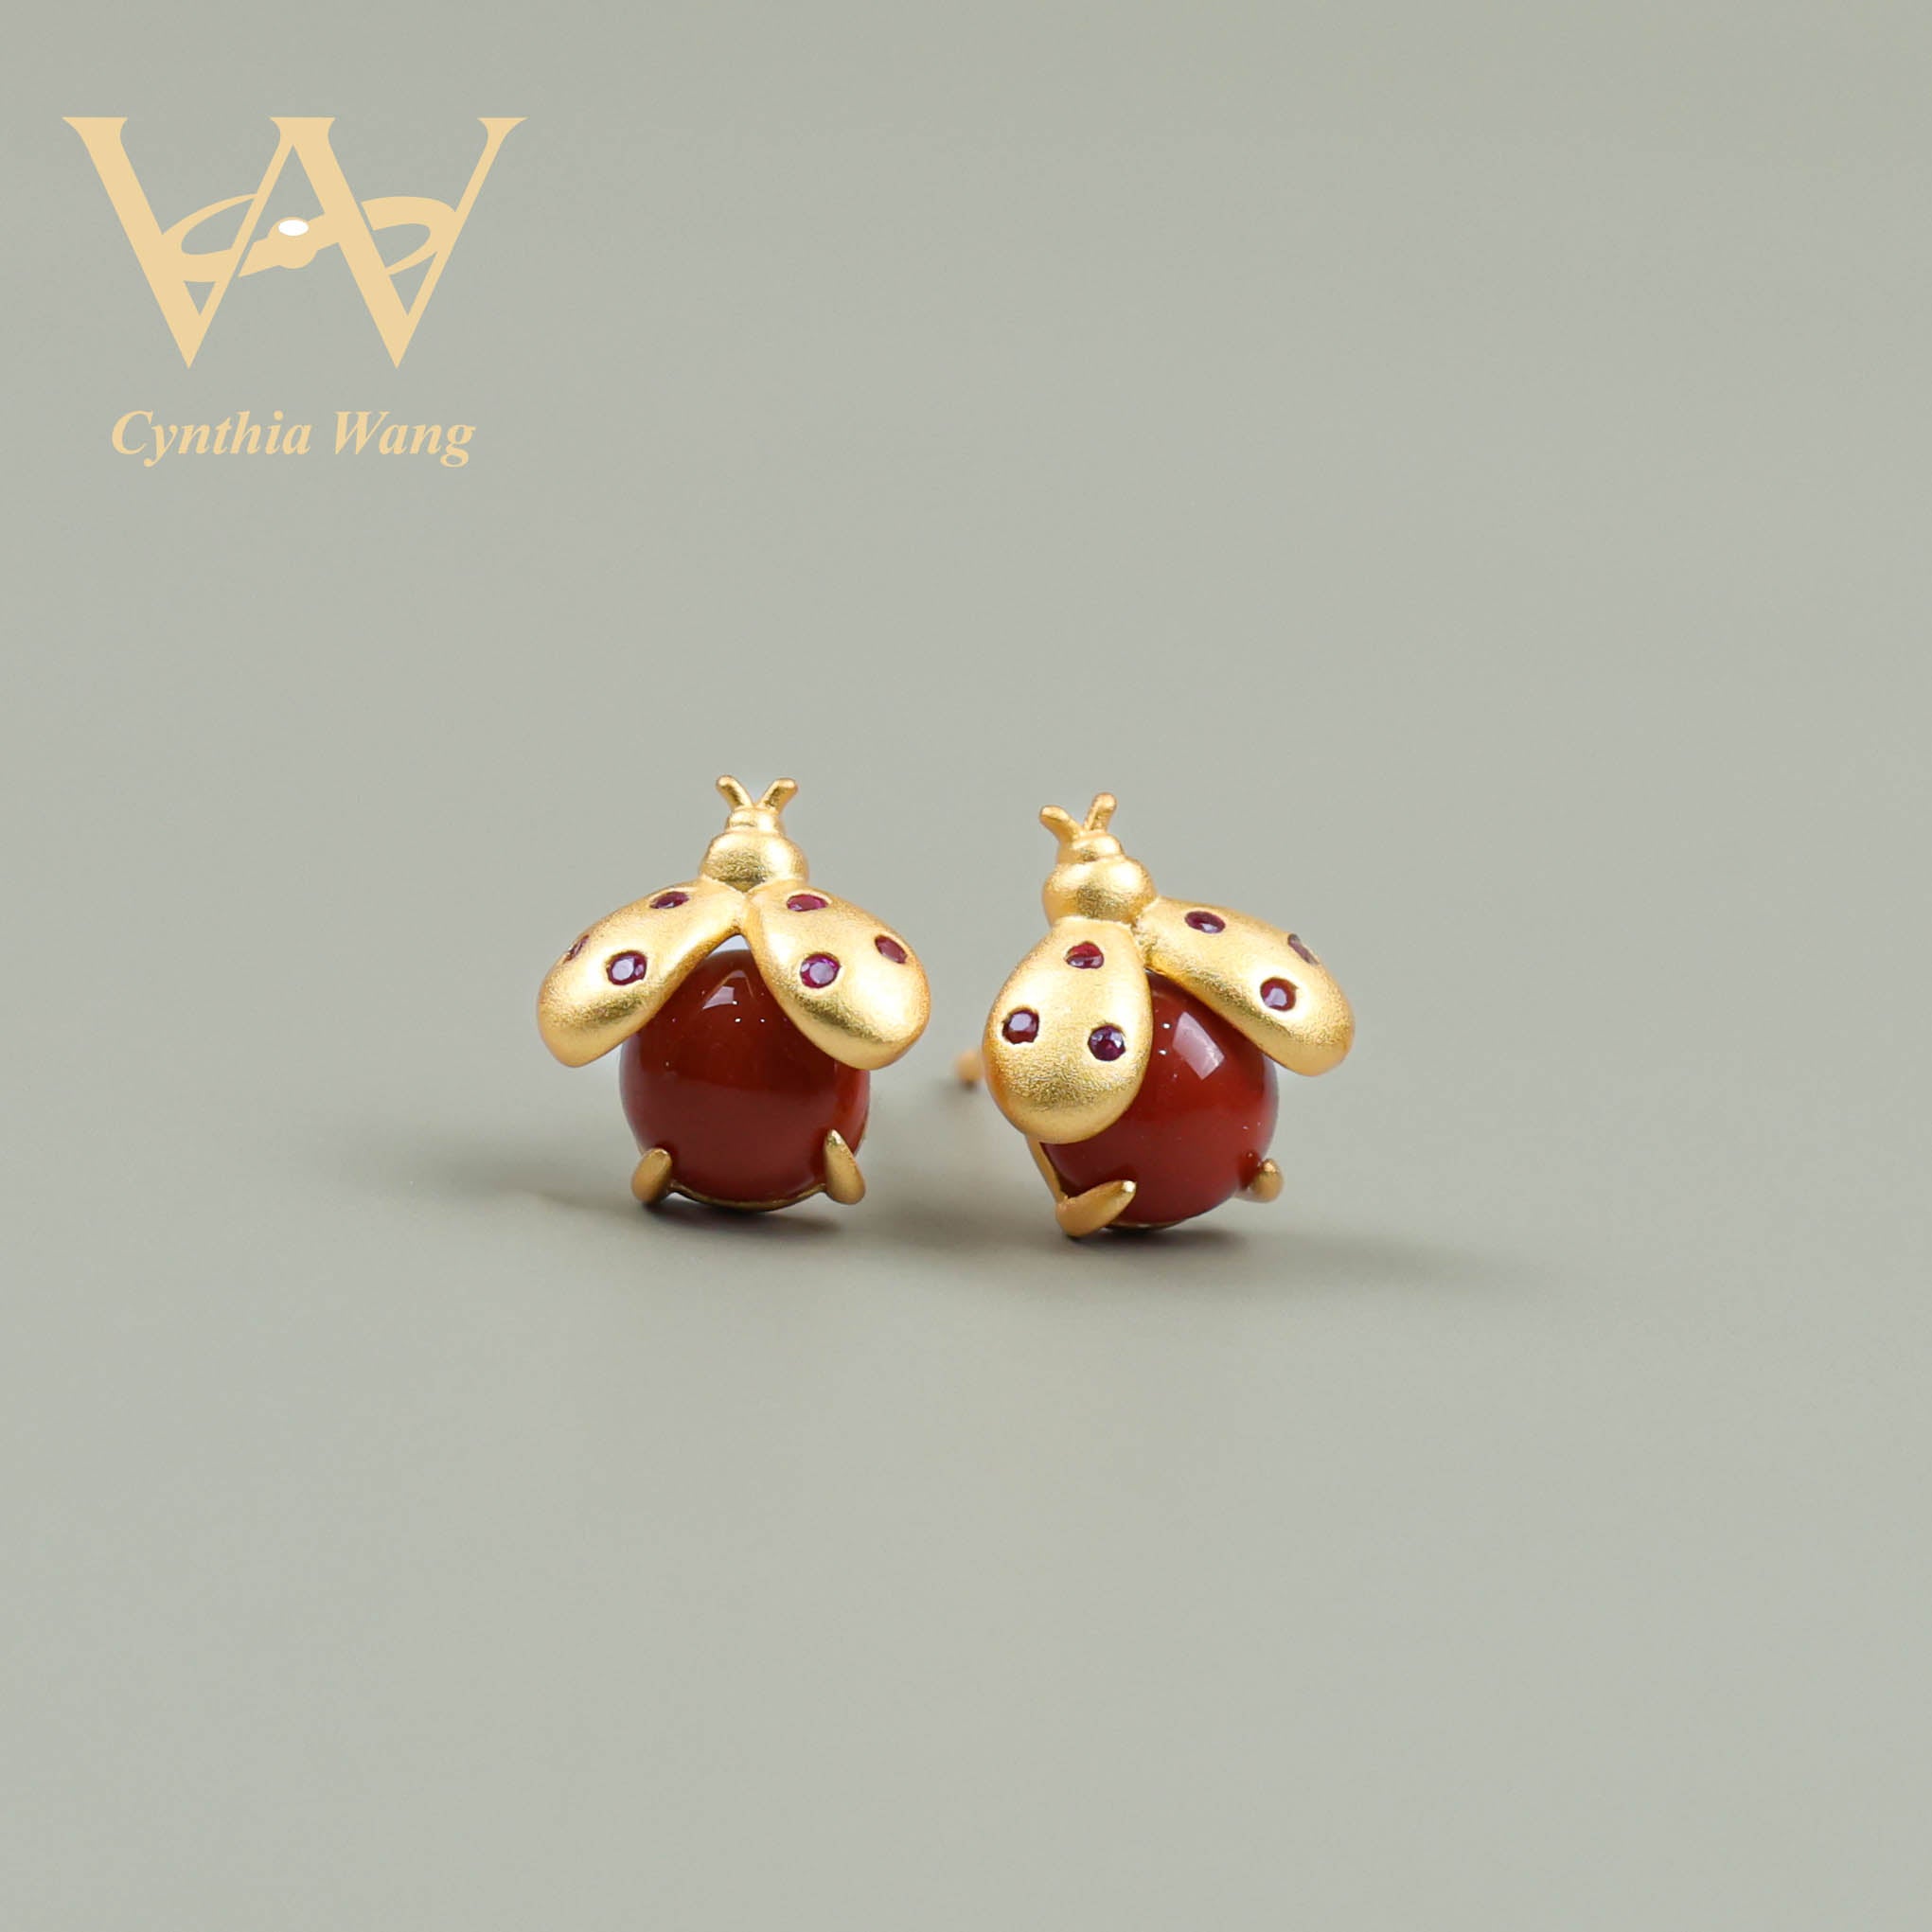 'Ladybug Luxe' Red Carnelian Ear Studs